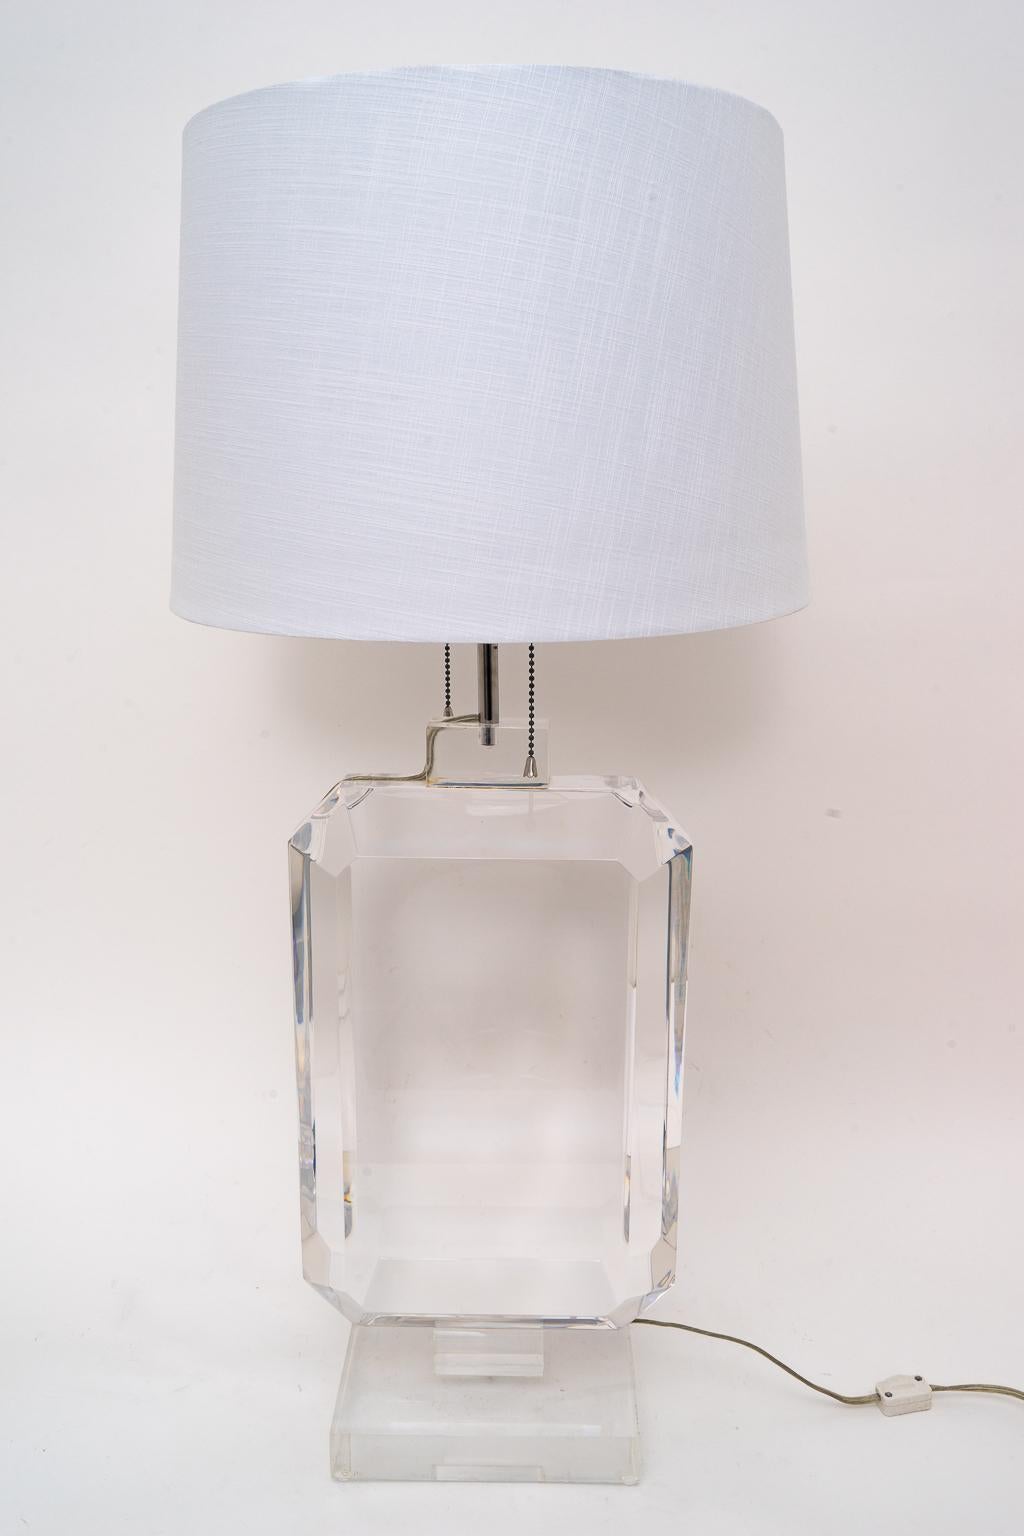 North American Les Prismatiques Lucite Table Lamp